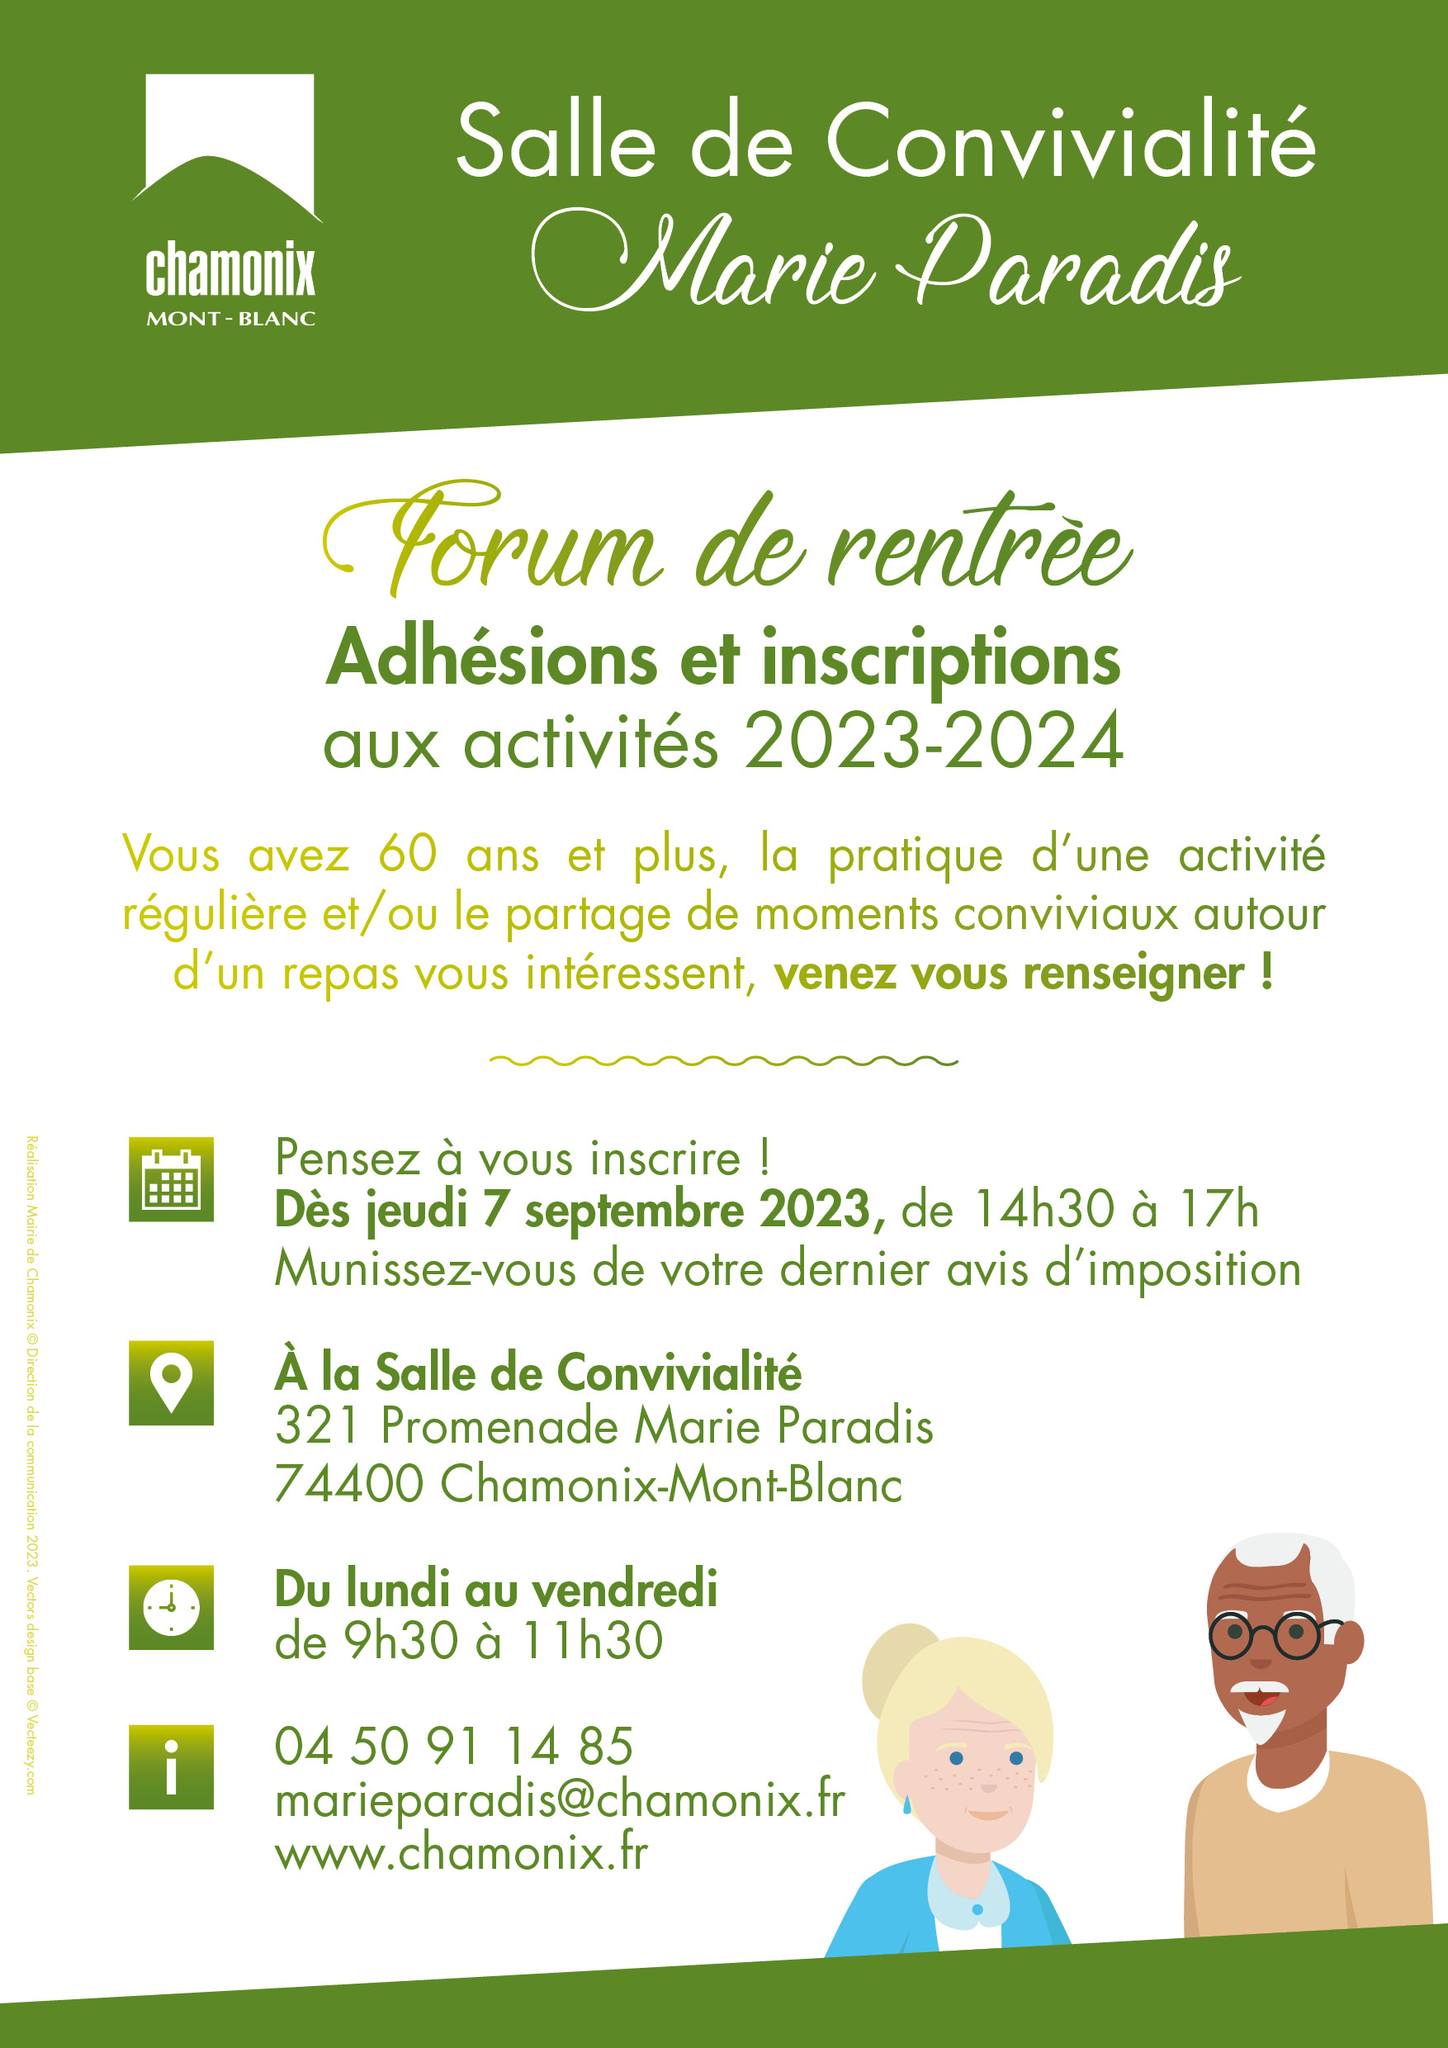  Forum à la salle de convivialité Marie Paradis de Chamonix-Mont-Blanc le 07 septembre 2023 